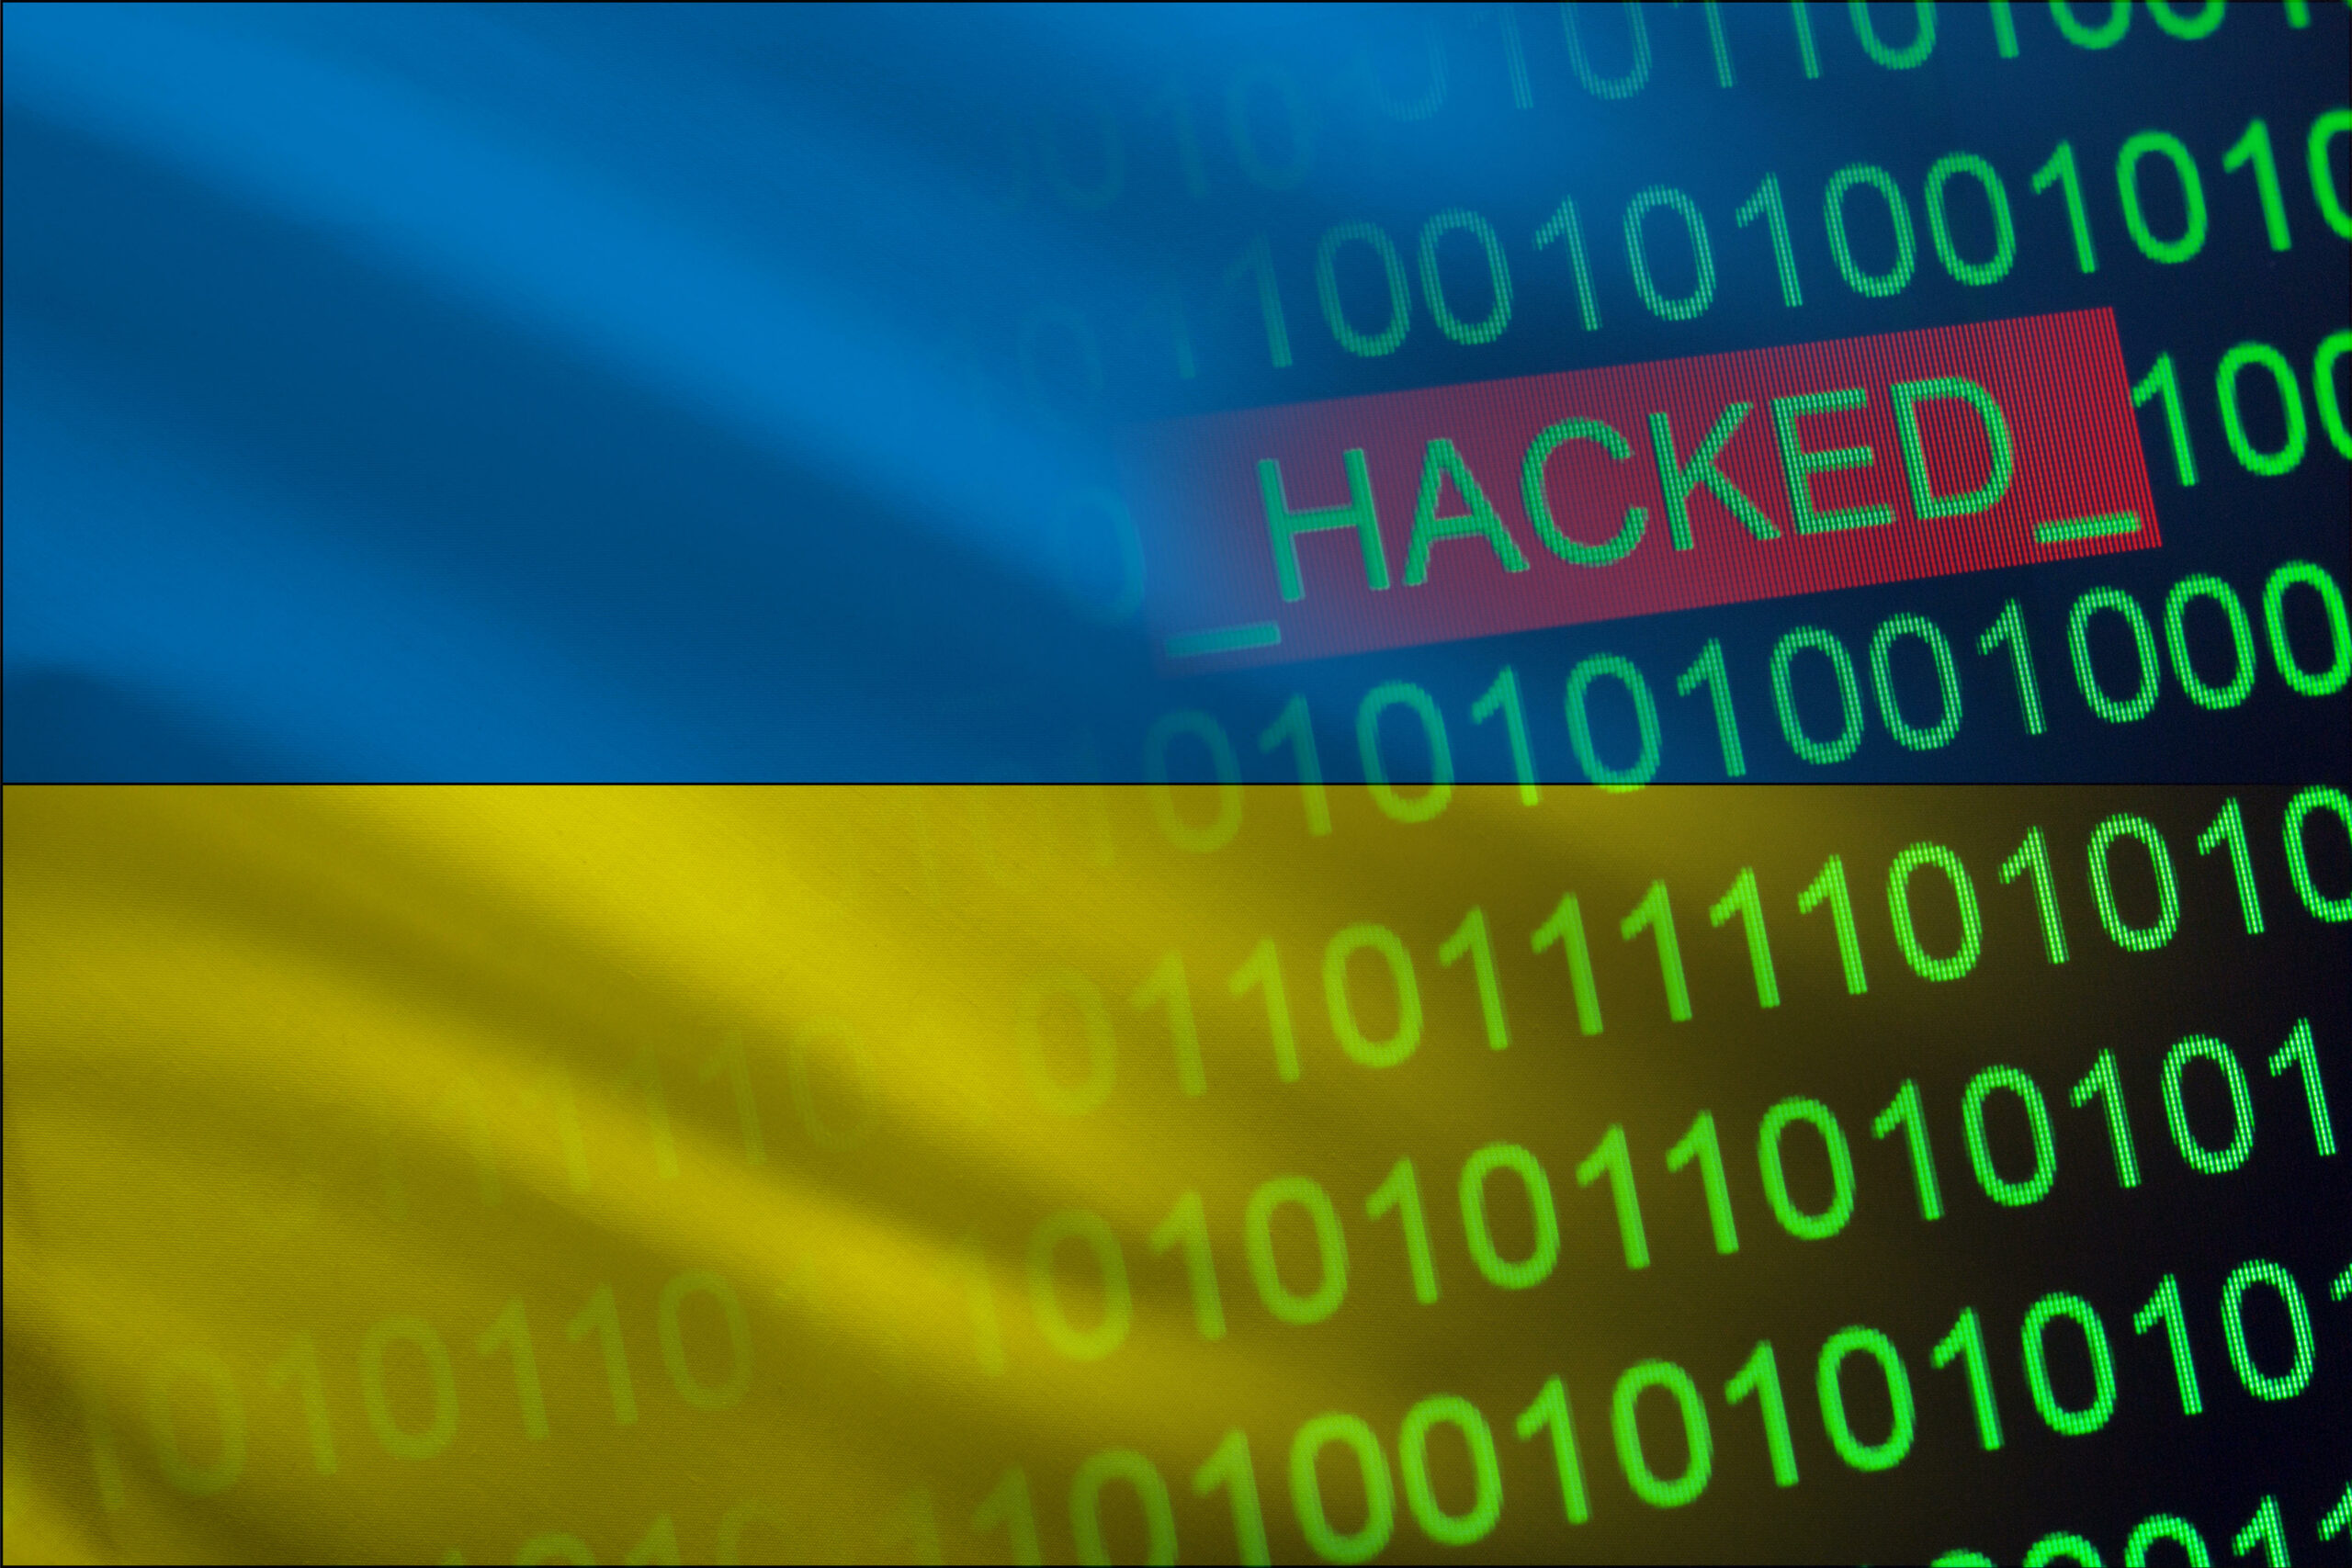 Une série de cyberattaques frappe des organisations ukrainiennes d’infrastructures critiques